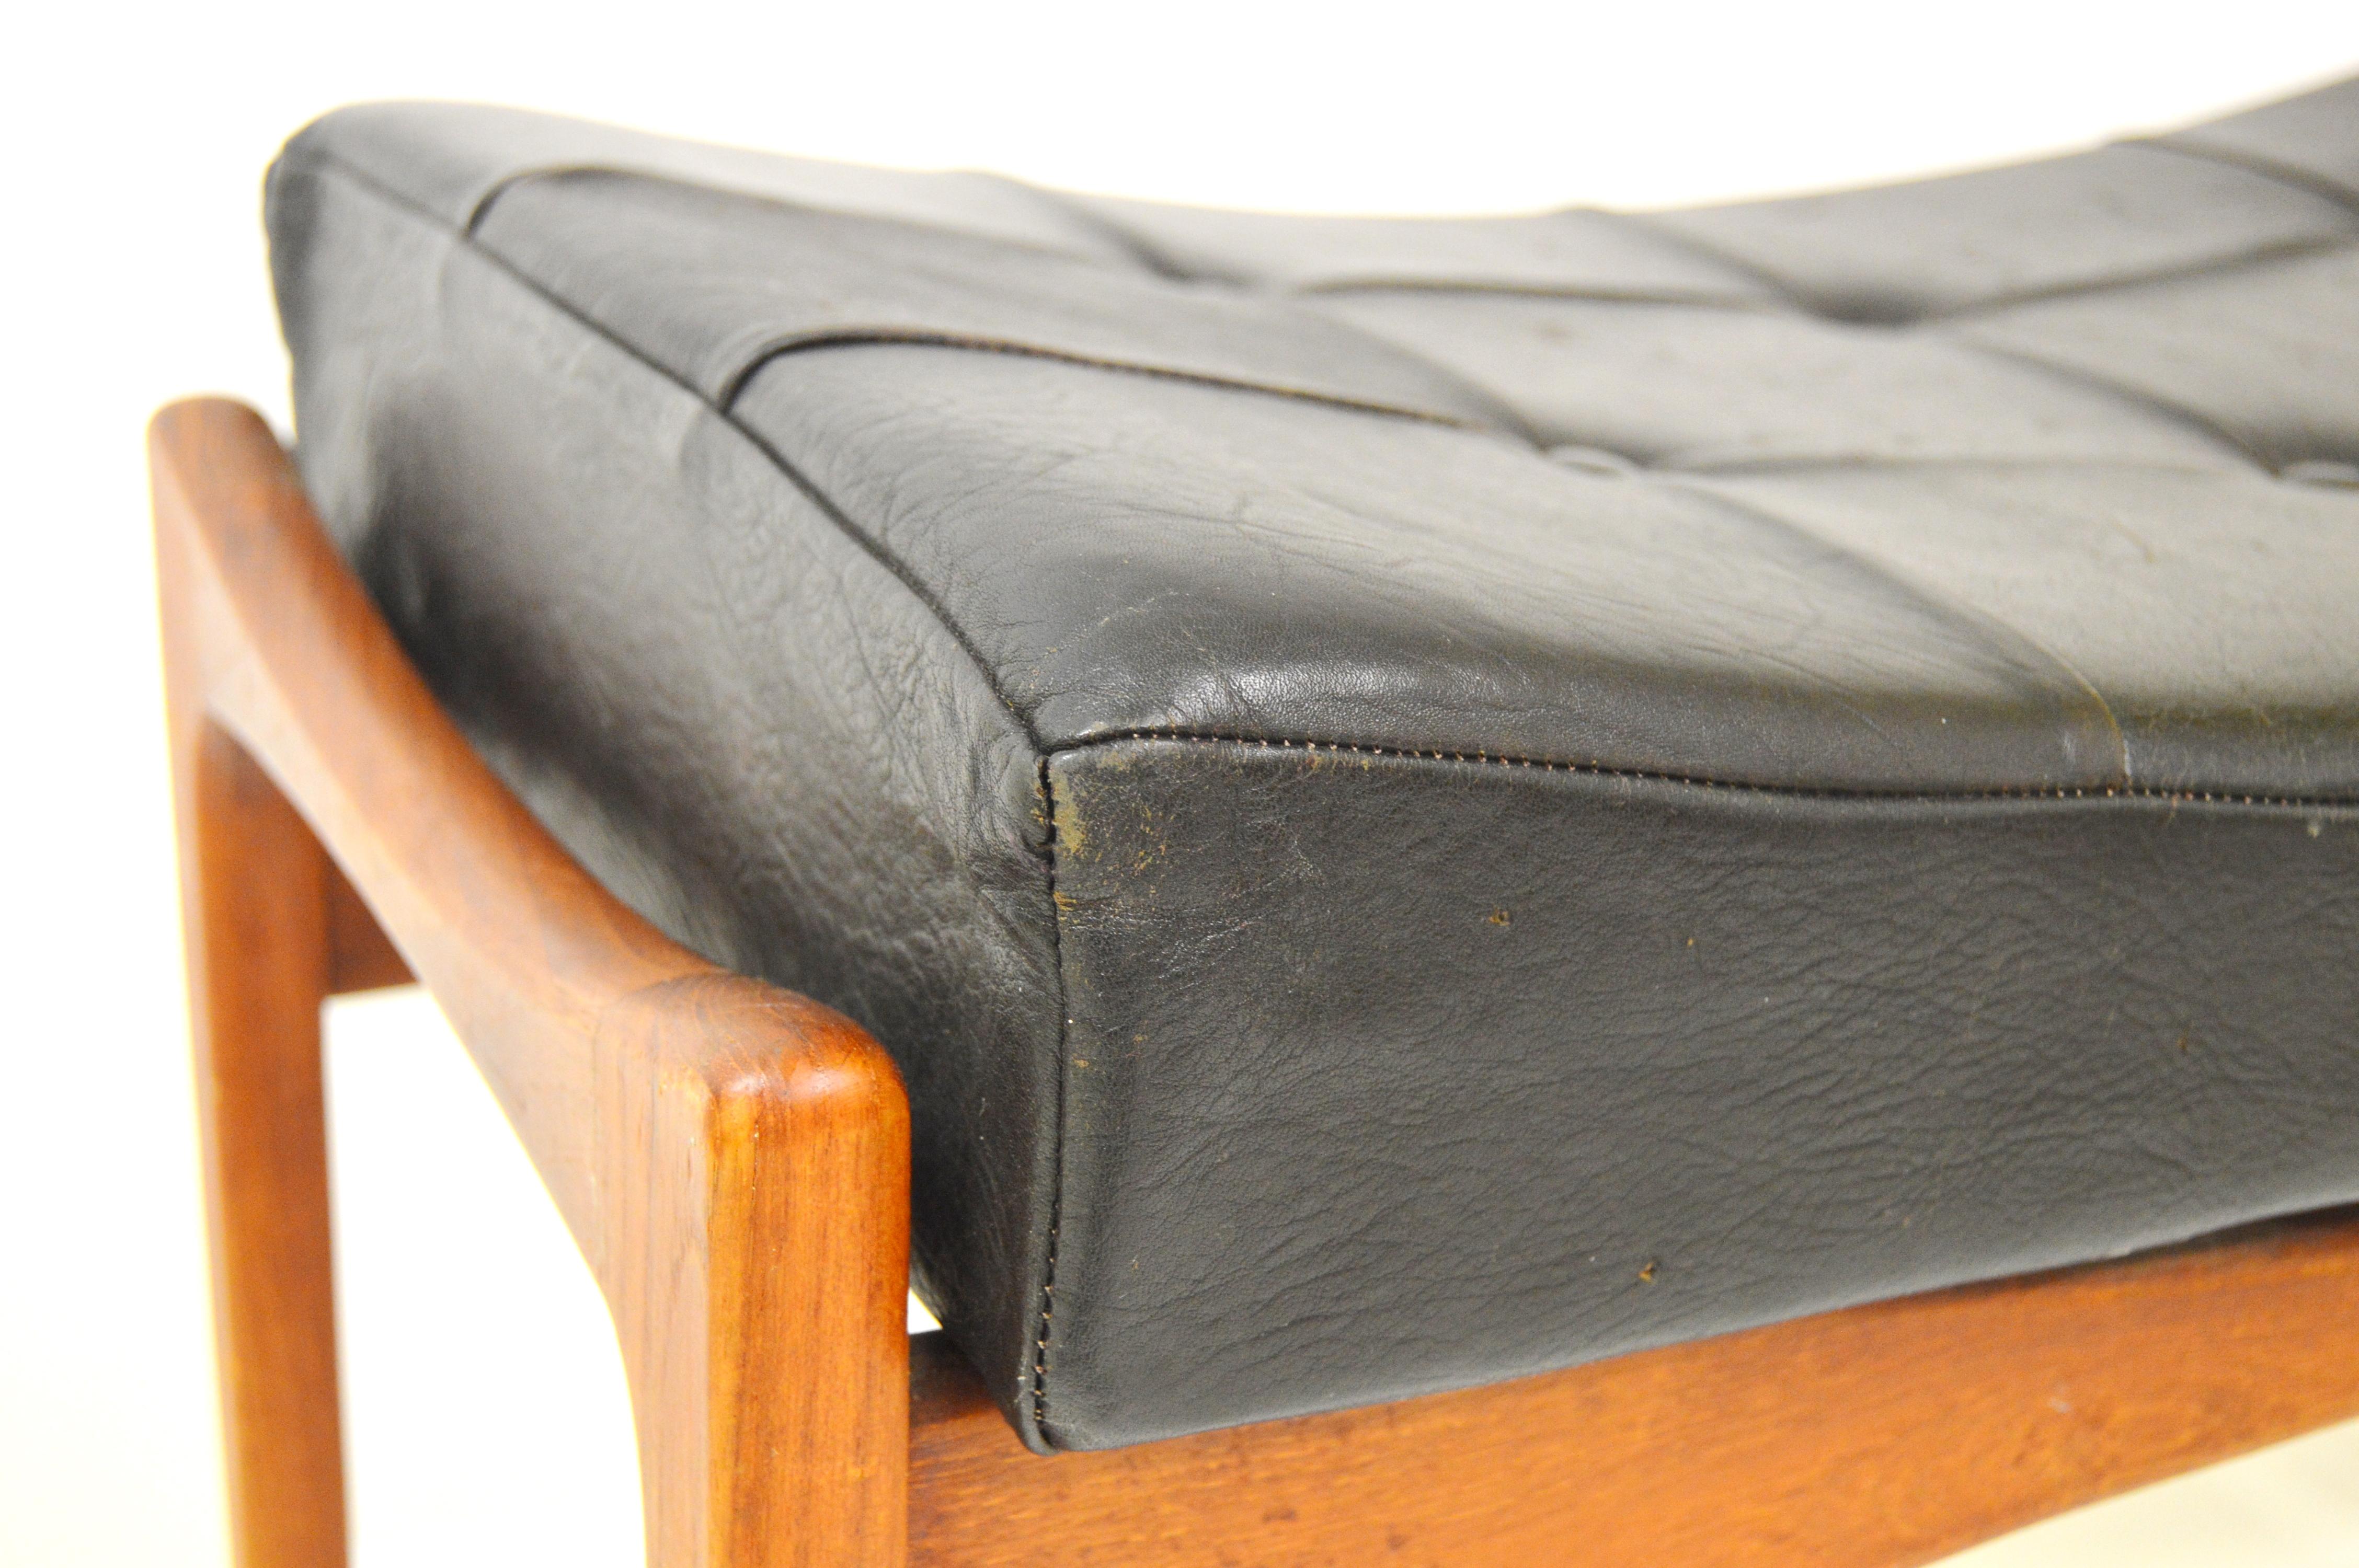 Ib Kofod-Larsen Foot Stool Siesta Teak and Black Leather For Sale 2